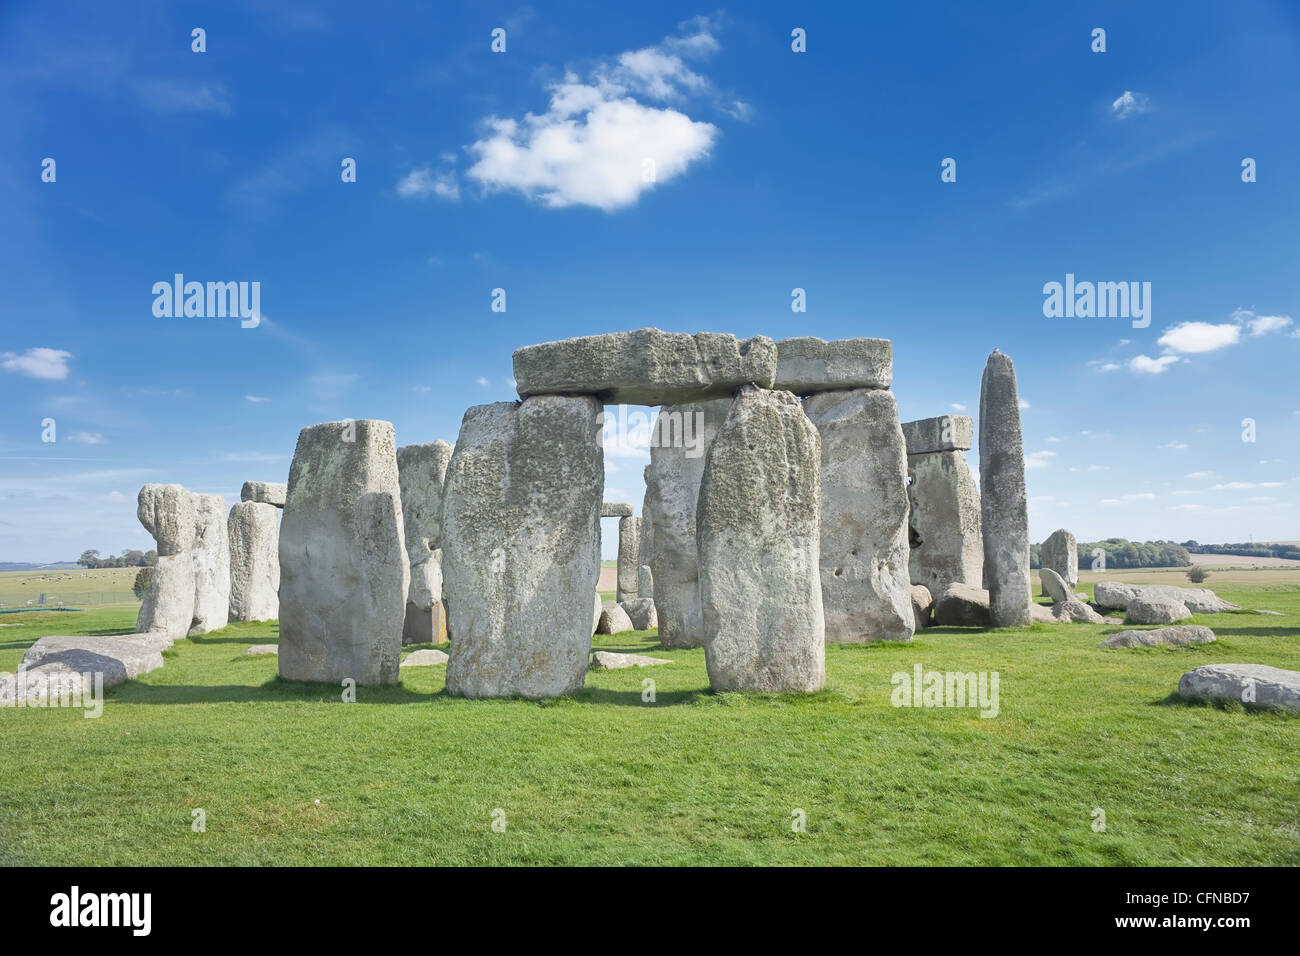 Stonehenge, site du patrimoine mondial de l'UNESCO, la plaine de Salisbury, Wiltshire, Angleterre, Royaume-Uni, Europe Banque D'Images